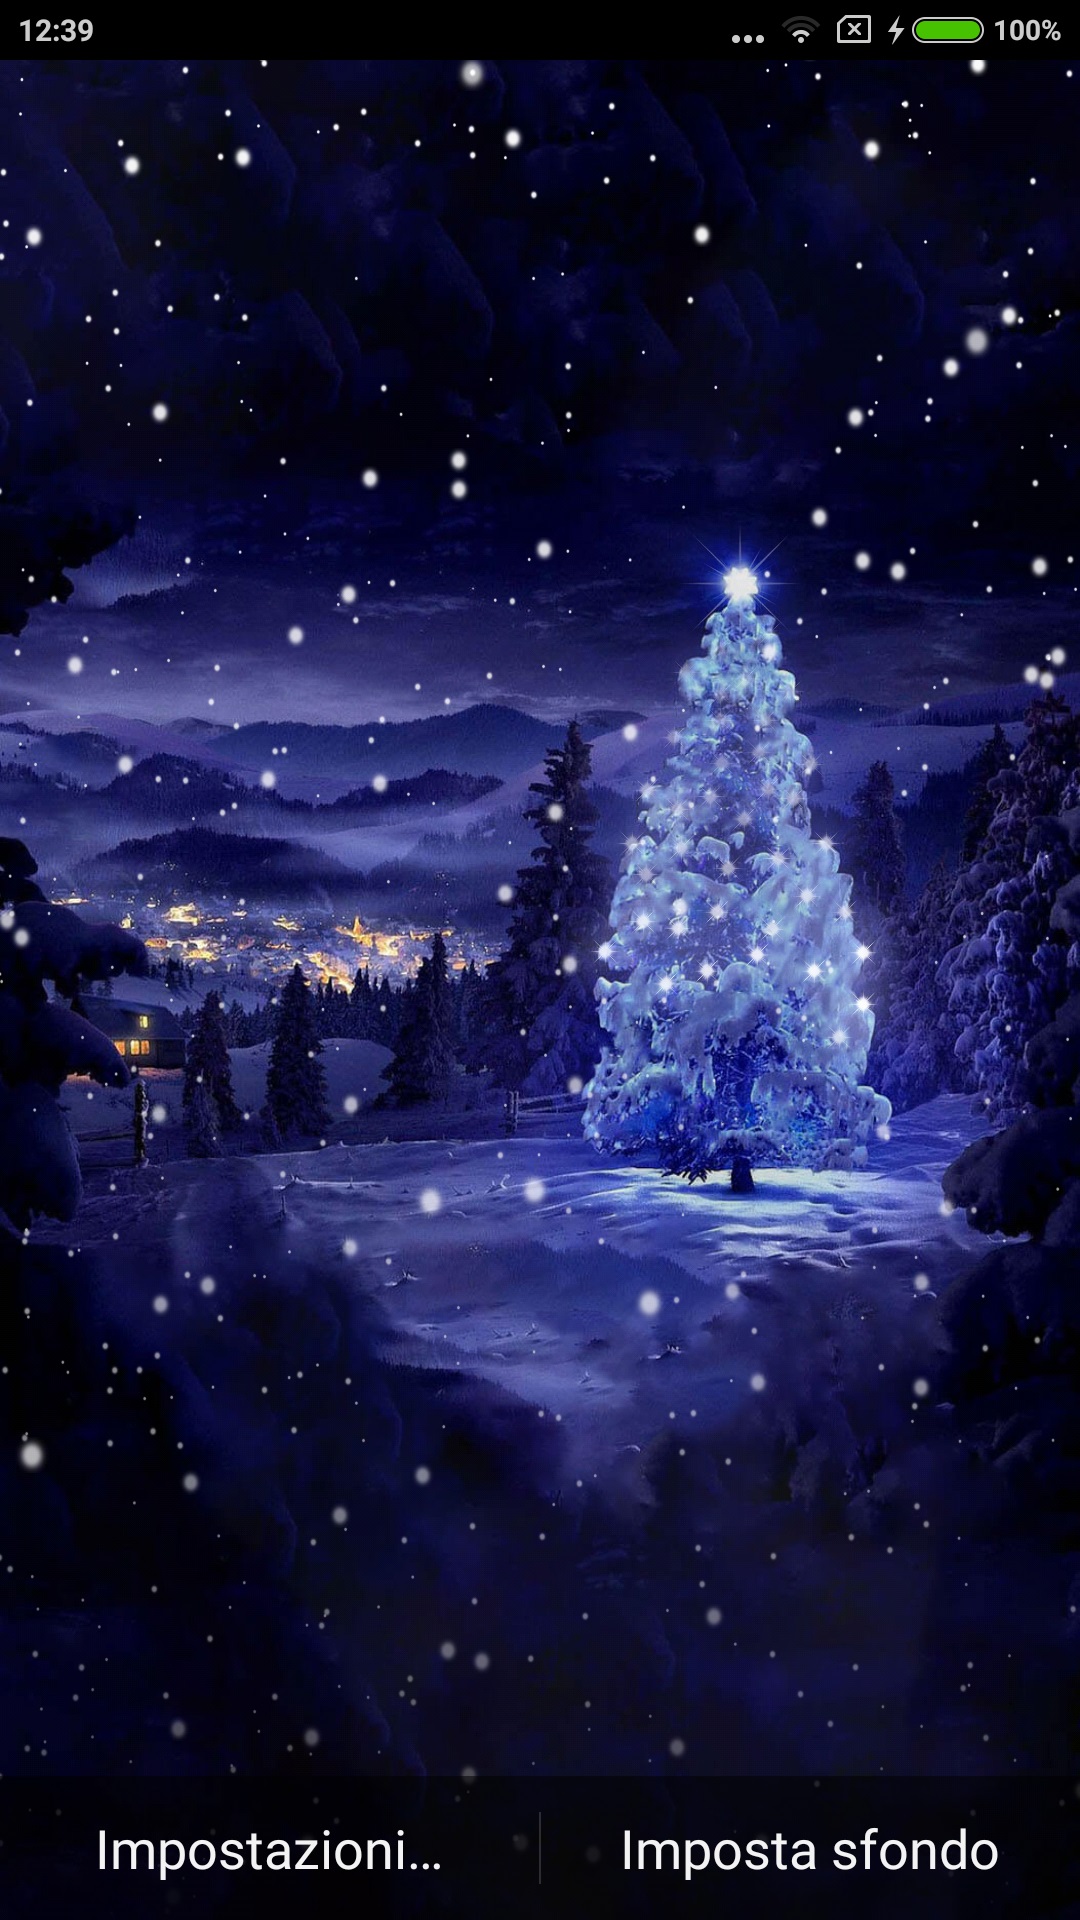 Sfondi Di Natale.Christmas Tree Offre Uno Sfondo Animato Personalizzabile Con L Albero Di Natale Innevato